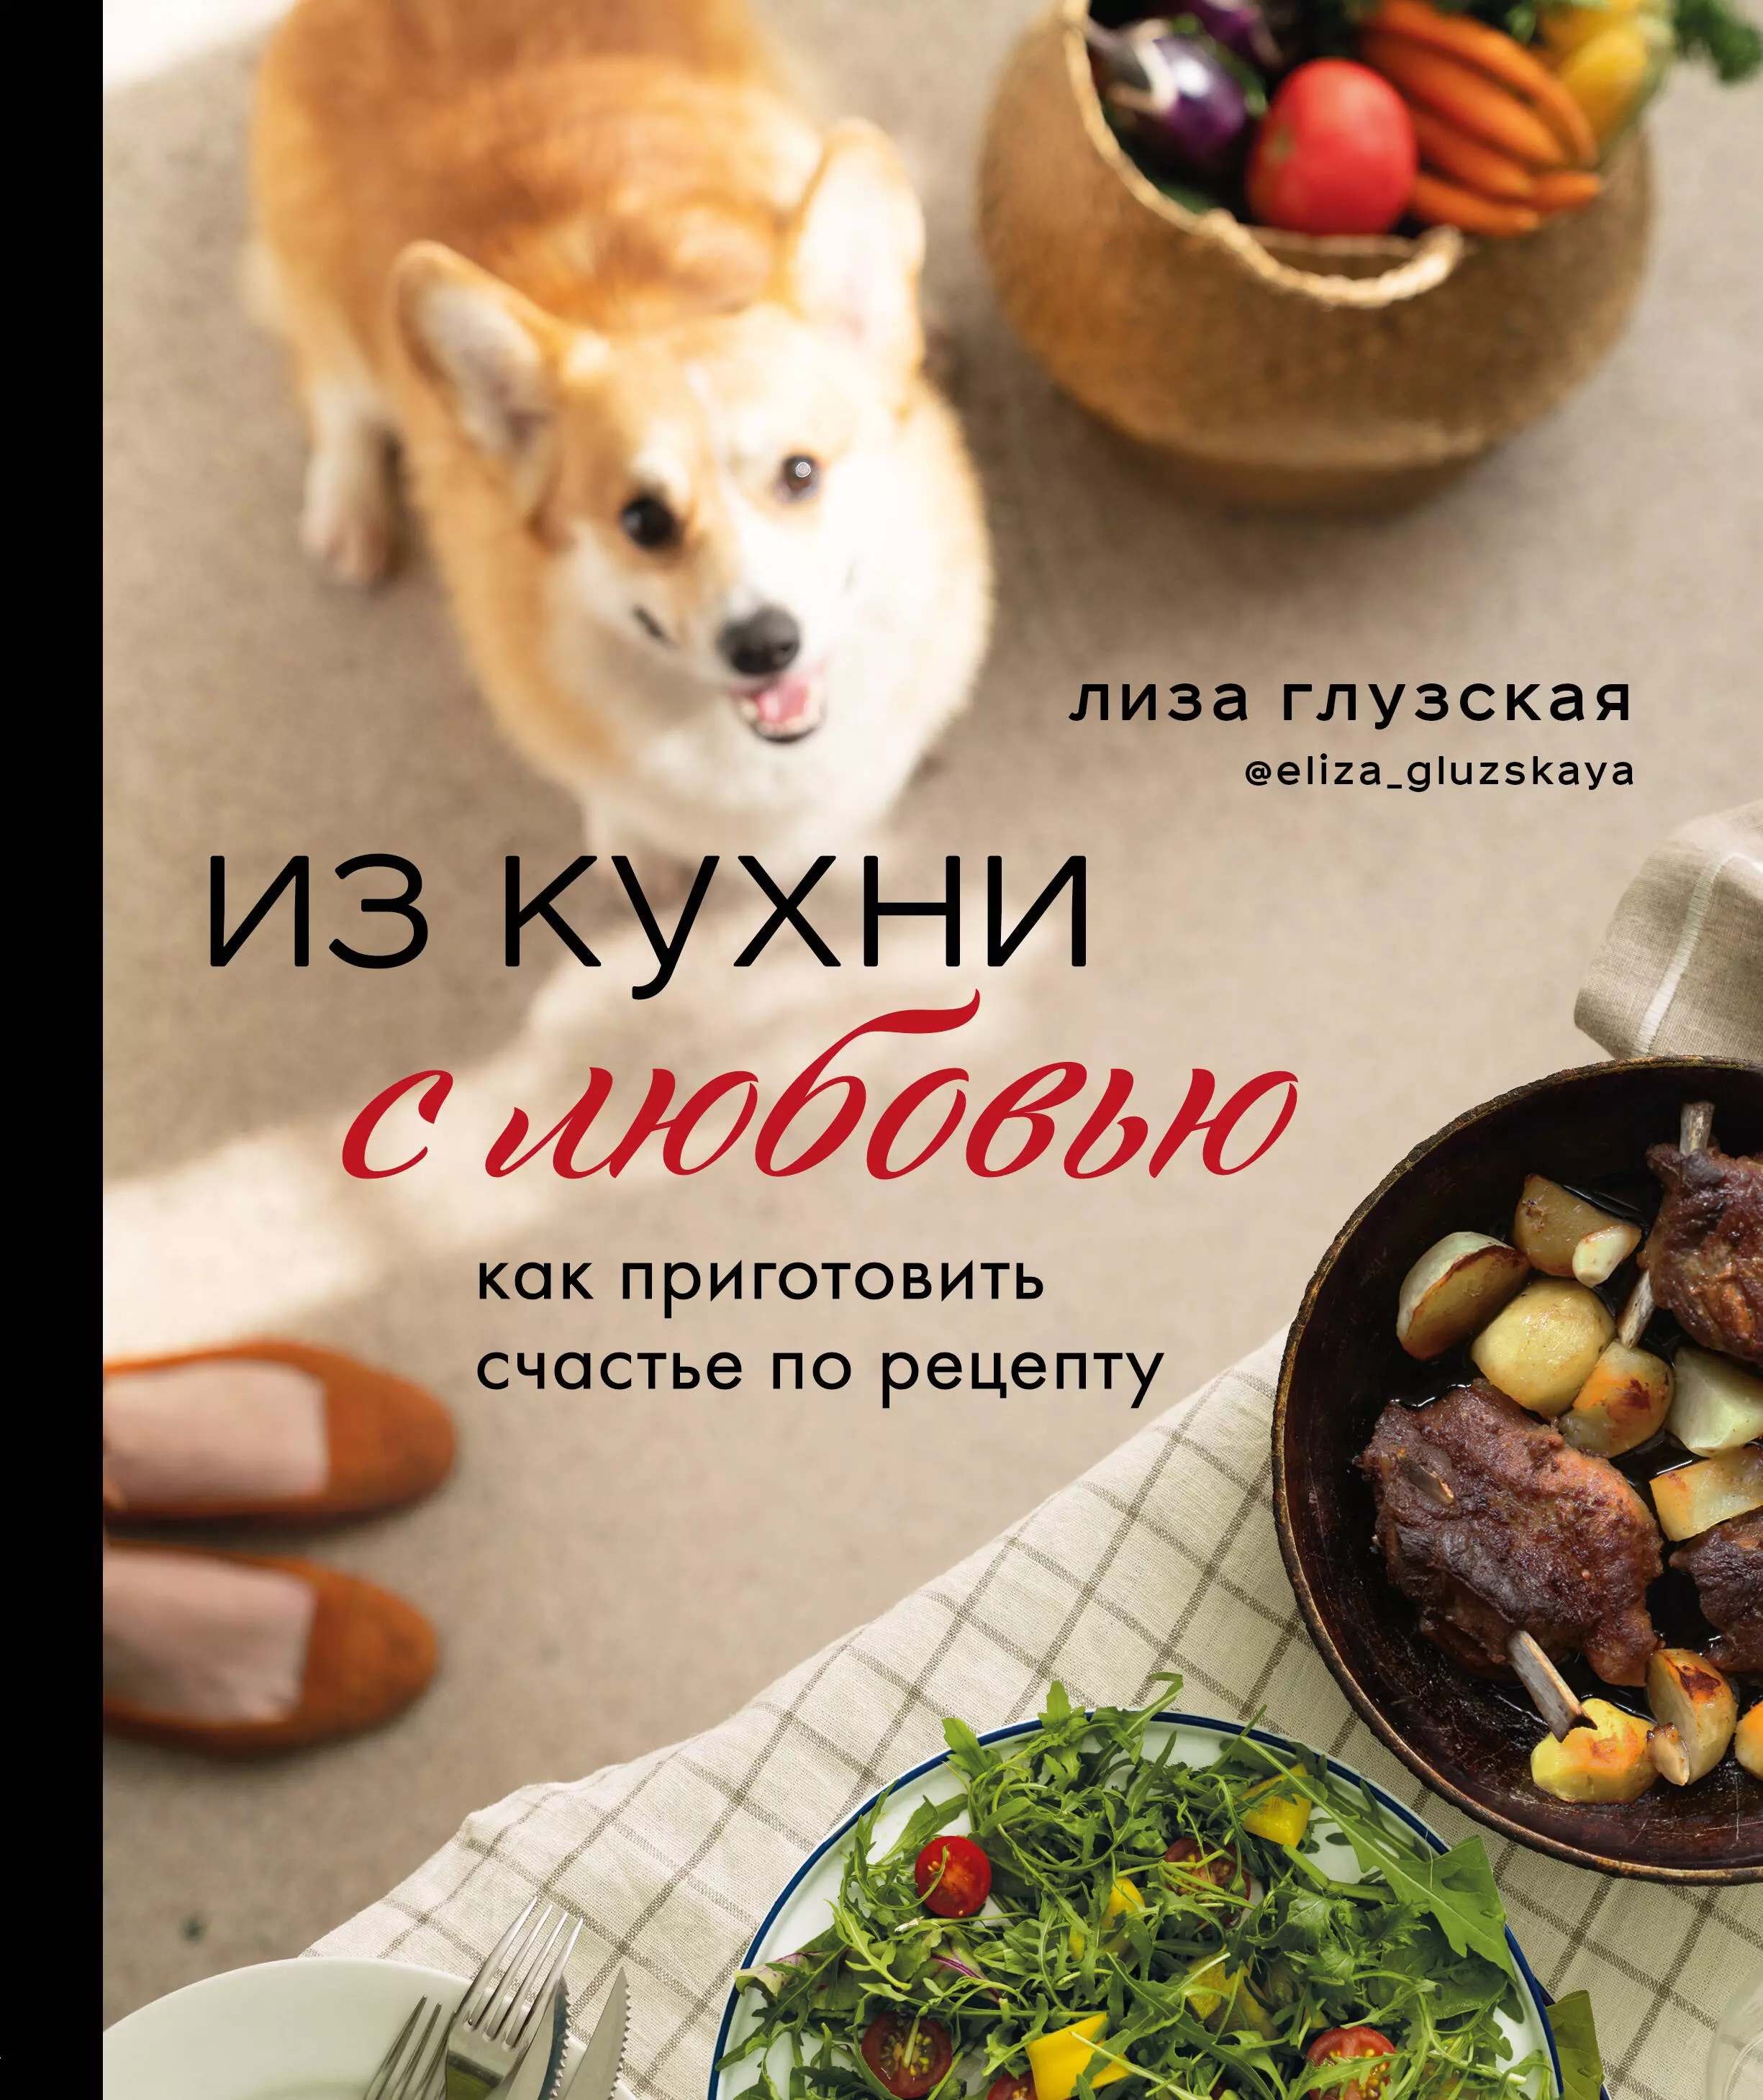 Славянская кухня: рецепты с фото